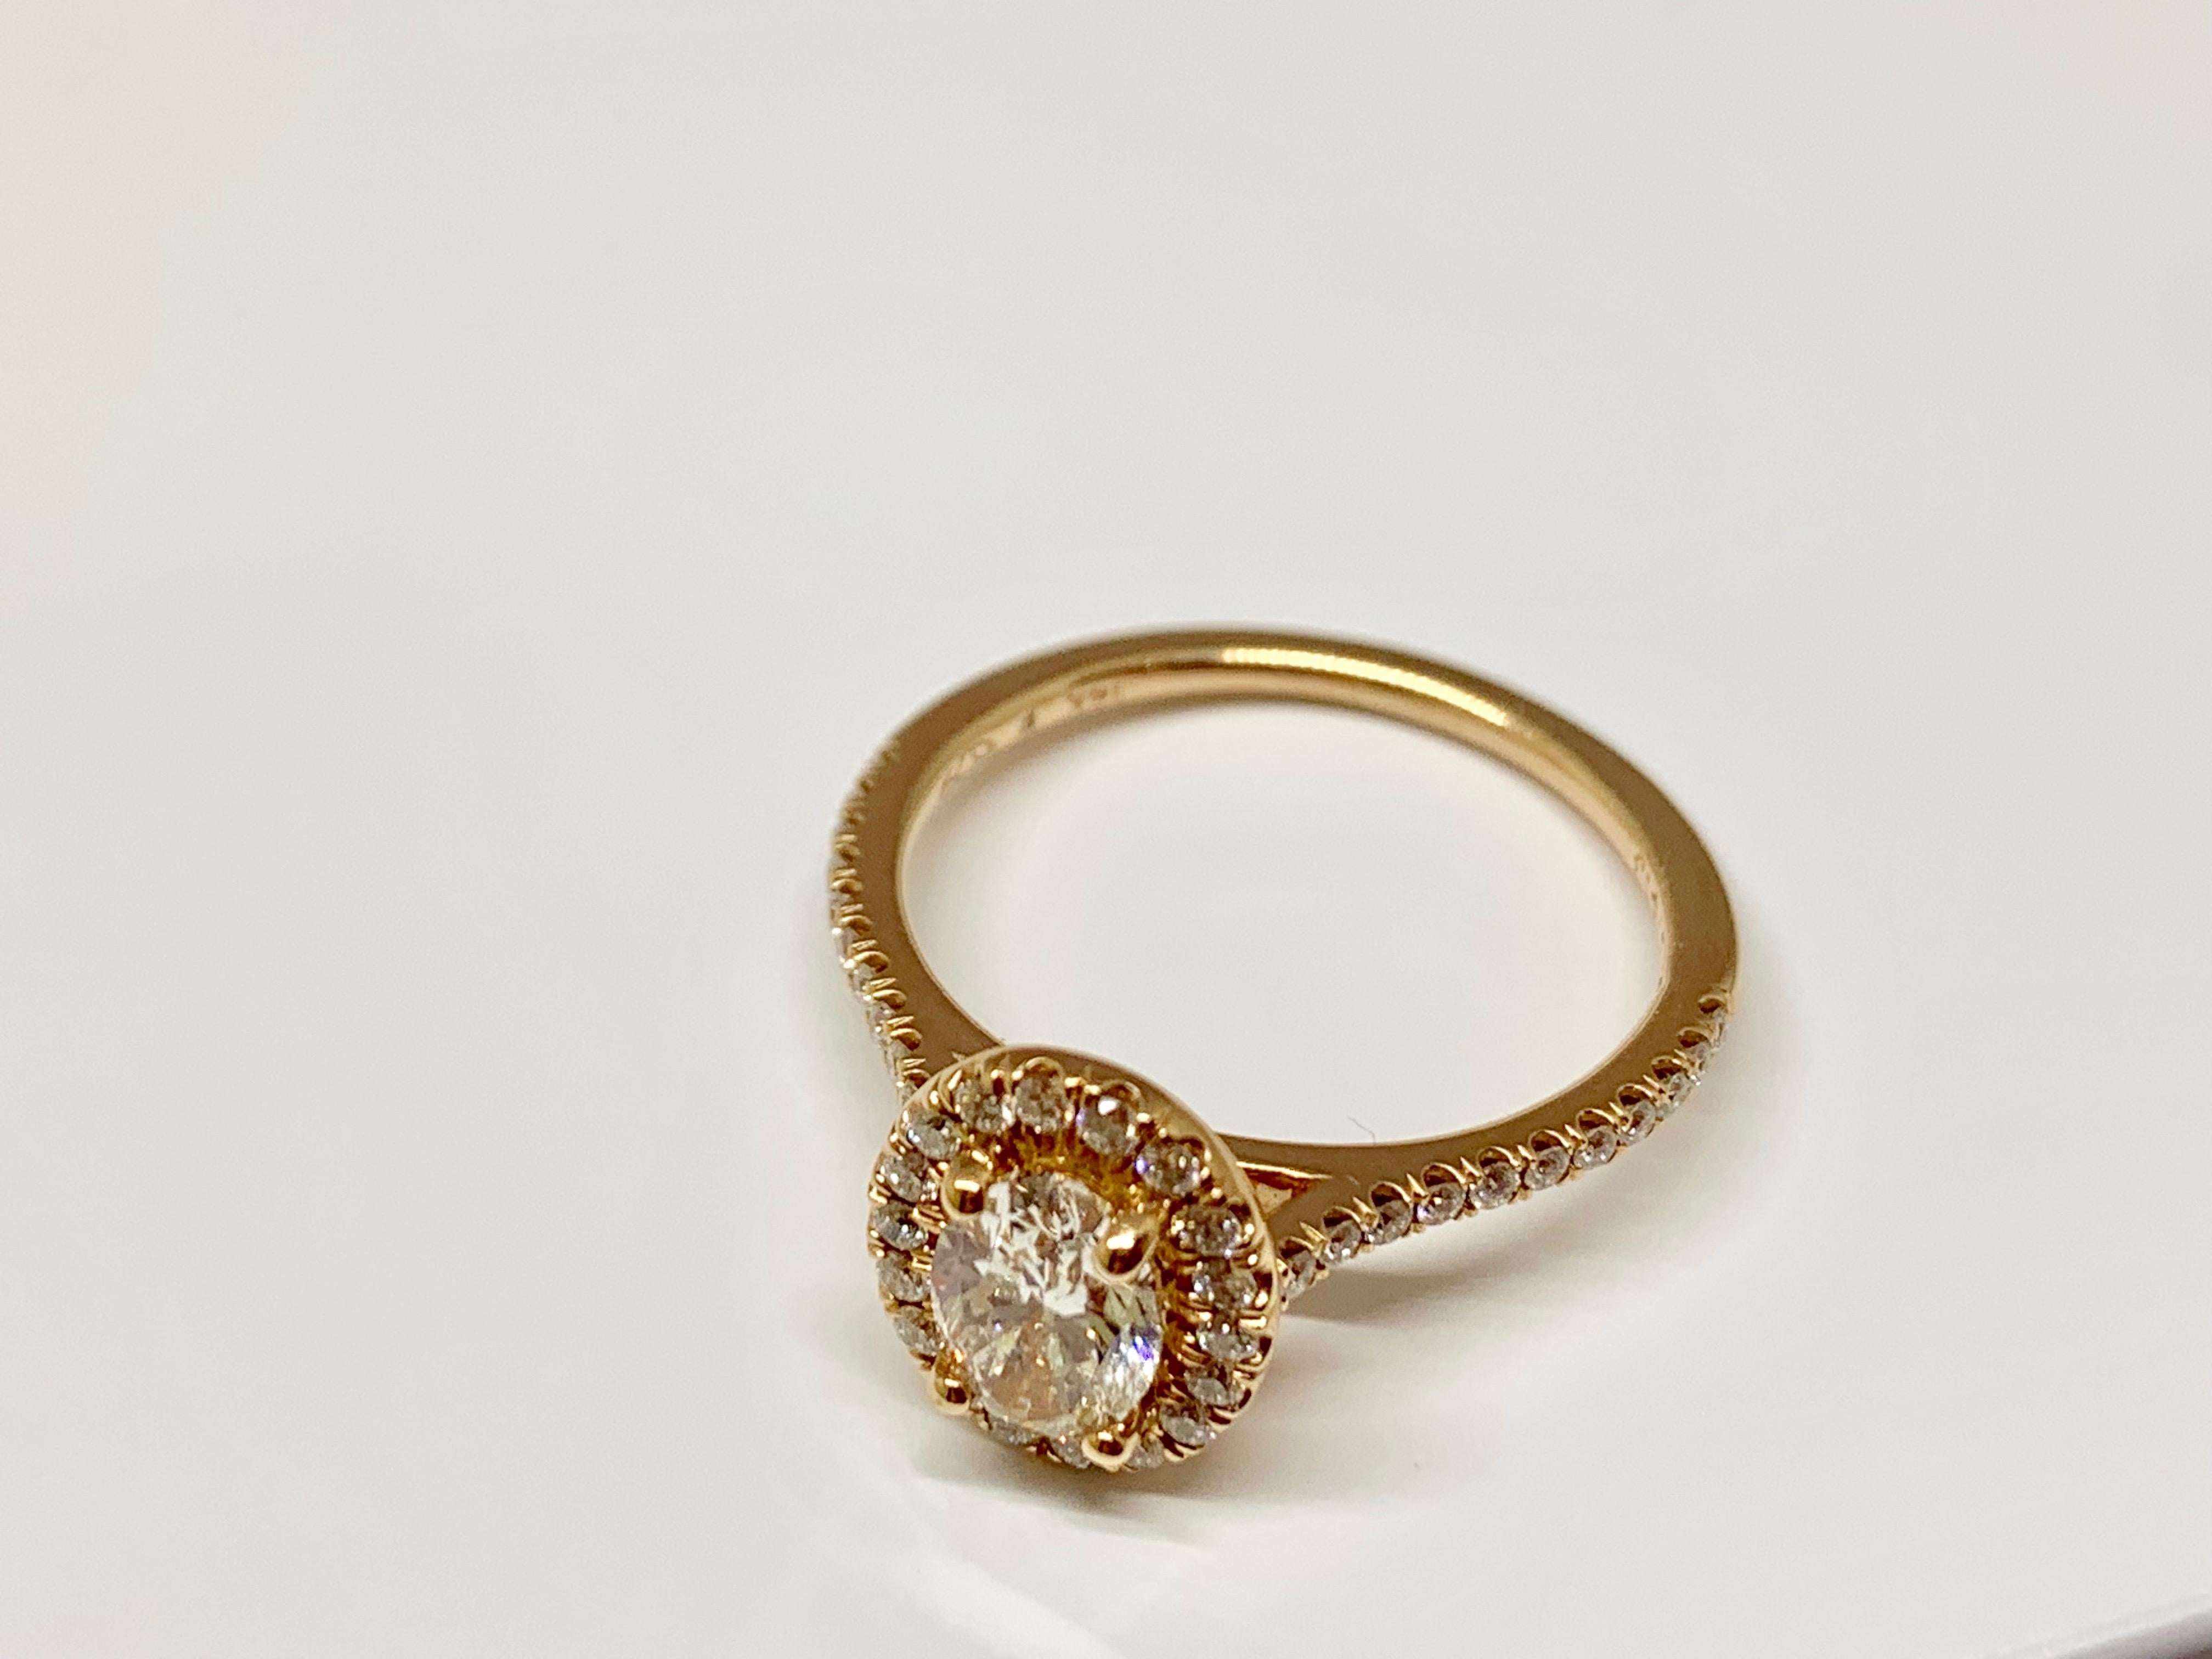 Romantic 14 Karat Rose Gold GIA Certified 1.02 Carat Total Weight Diamond Ring